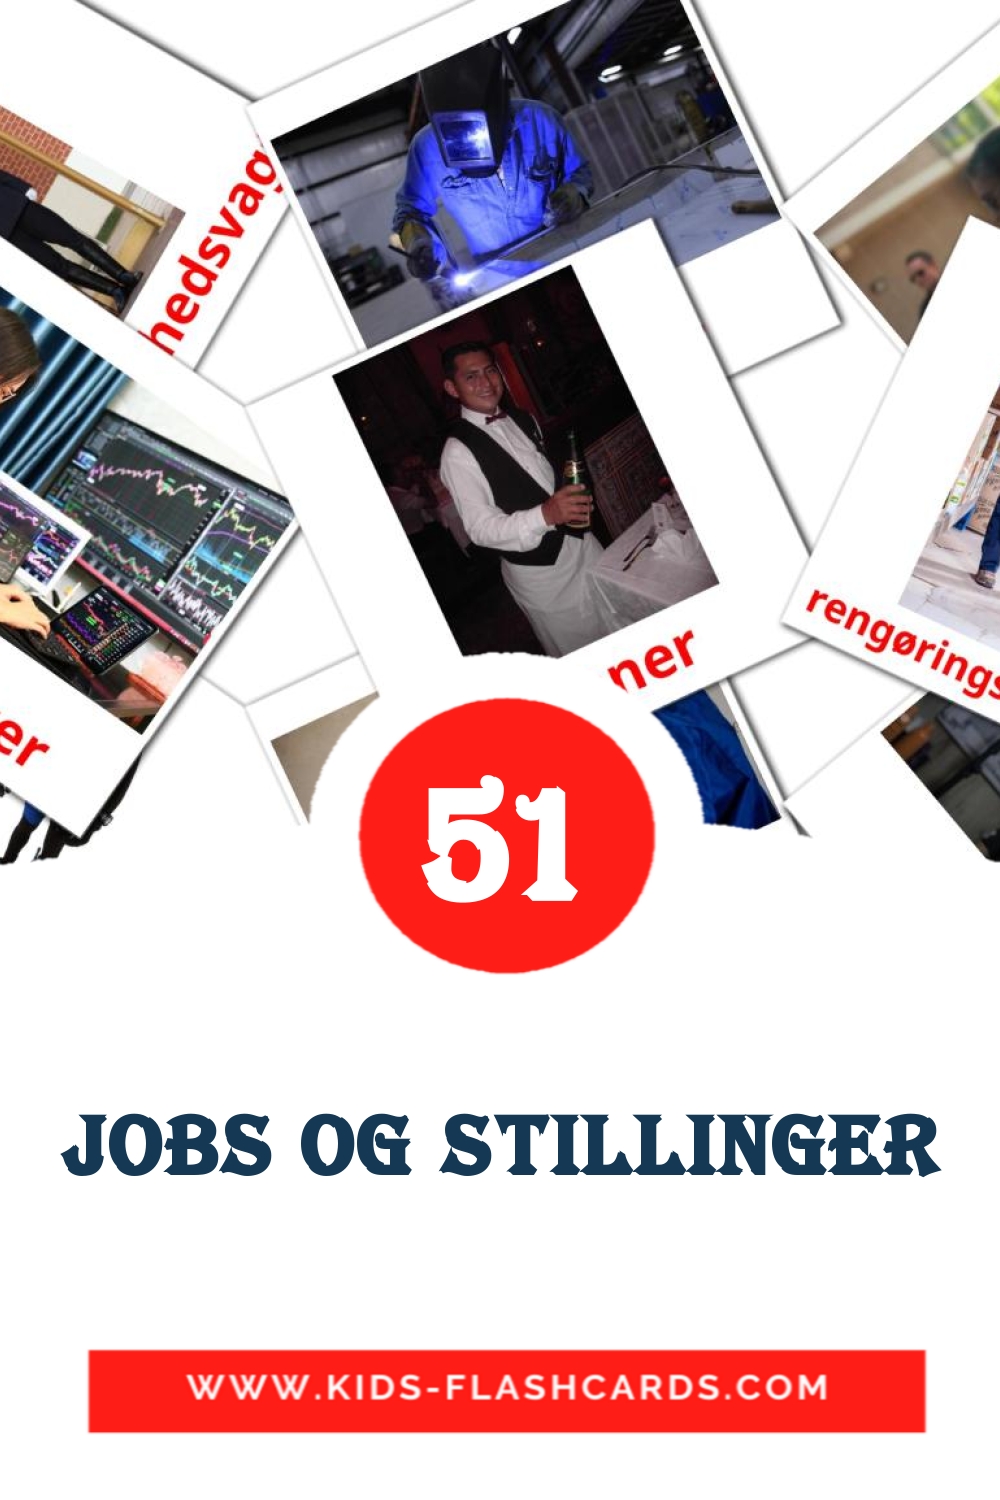 Jobs og stillinger на датском для Детского Сада (51 карточка)